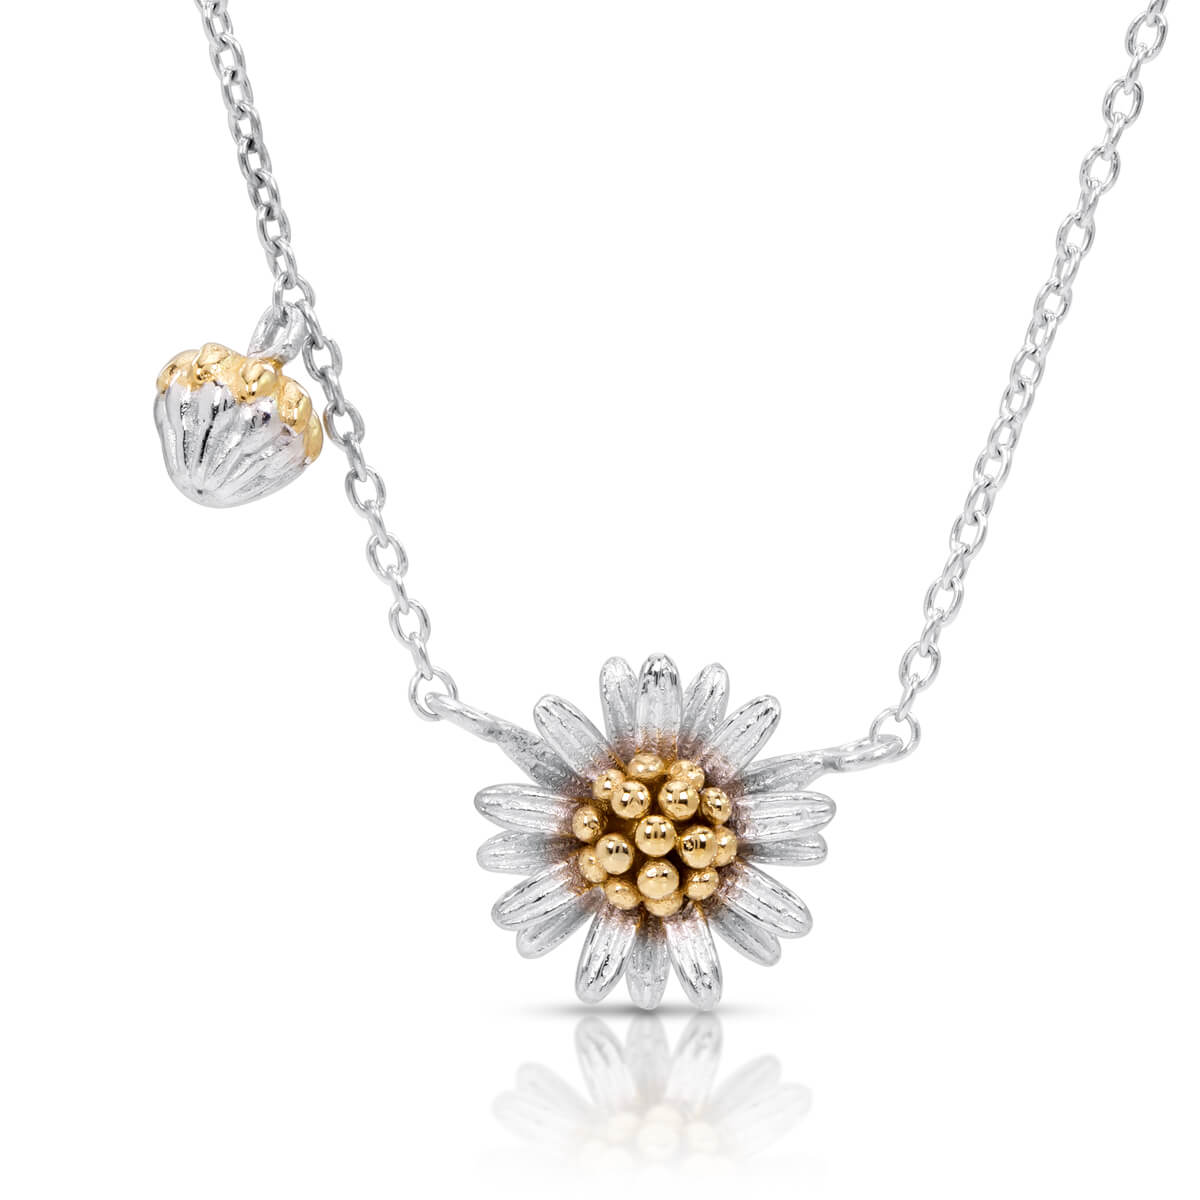 Blossom necklace